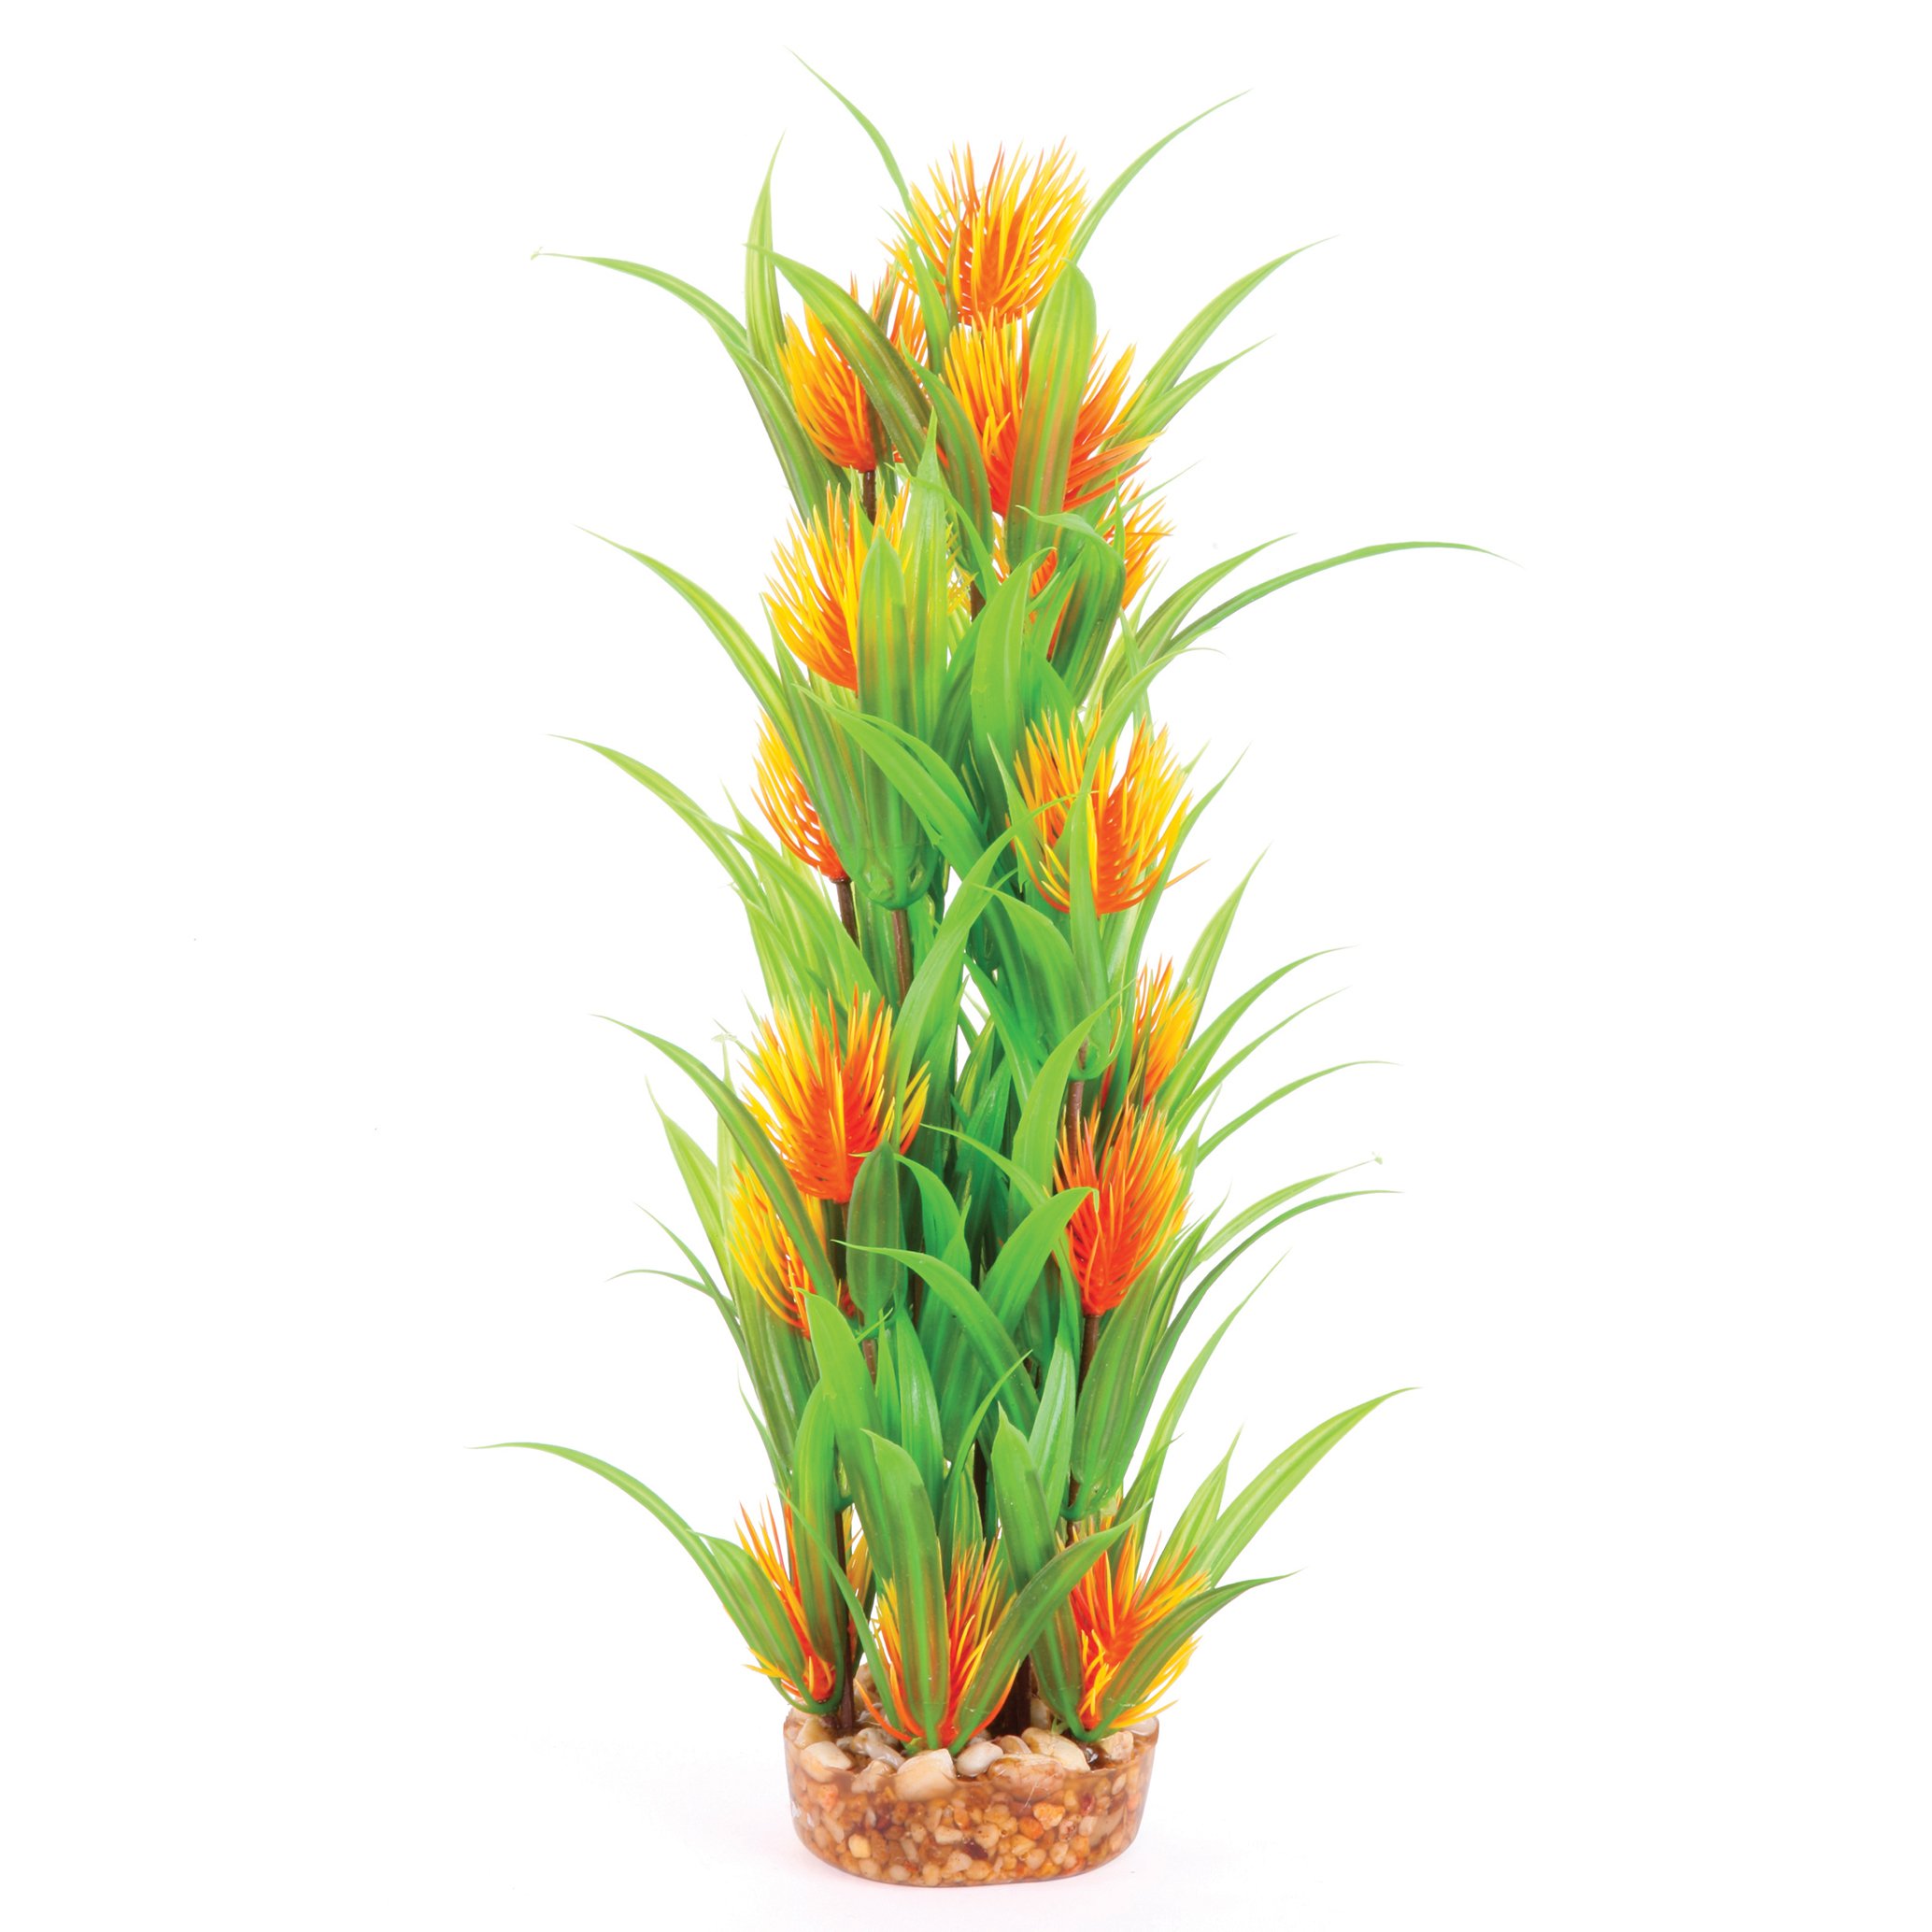 Plush Plant – Thin Leaf With Orange Flower